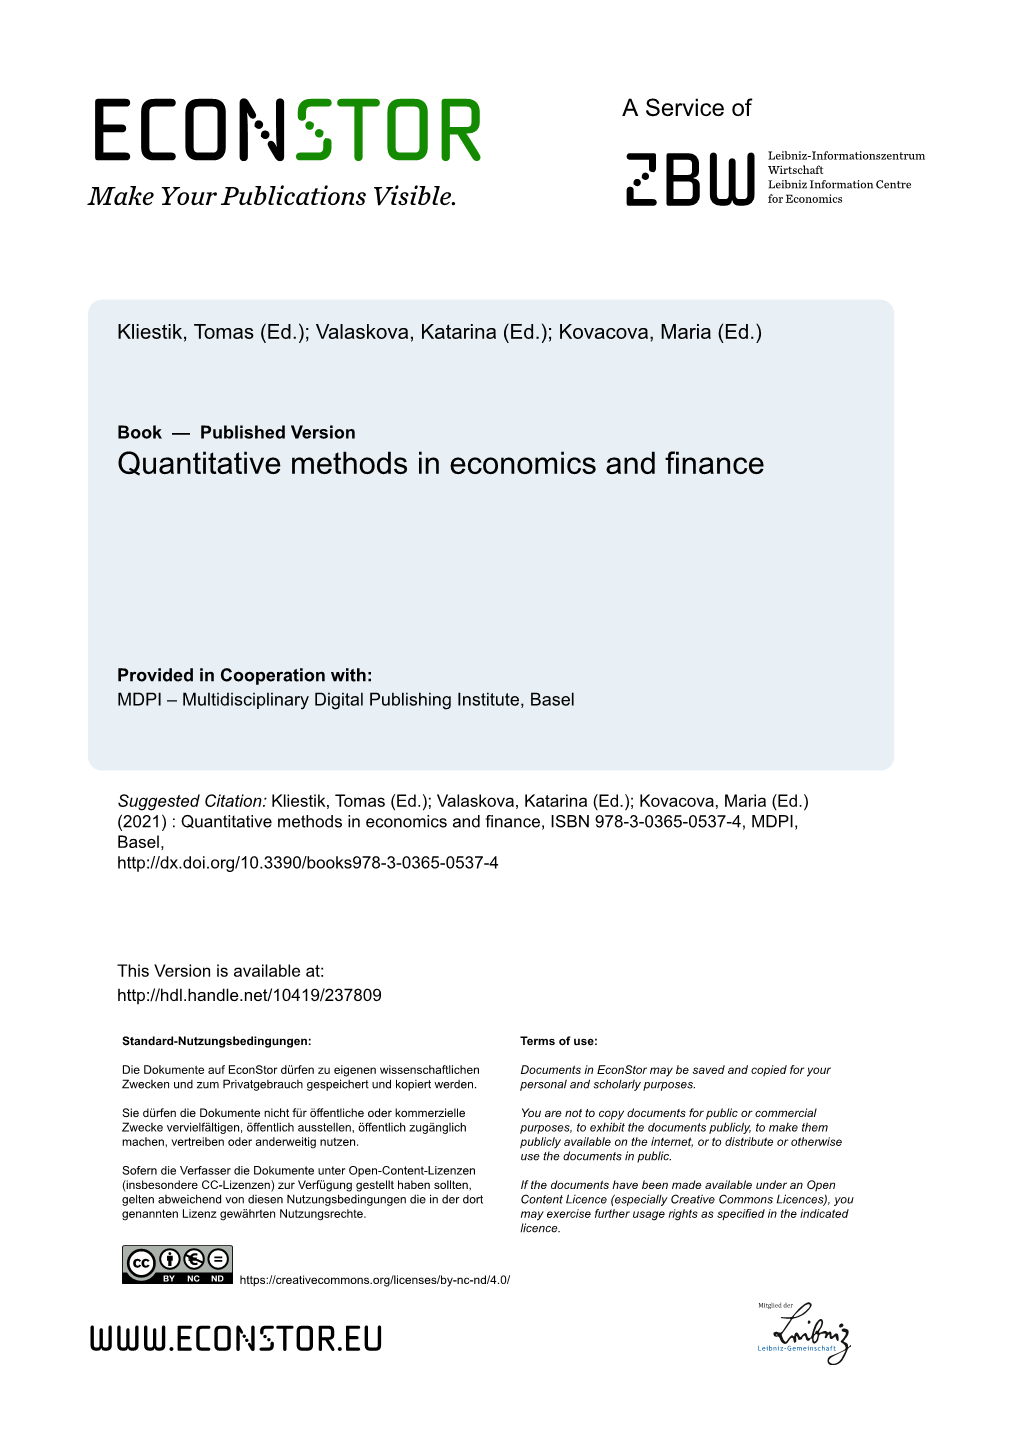 Quantitative Methods in Economics and Finance